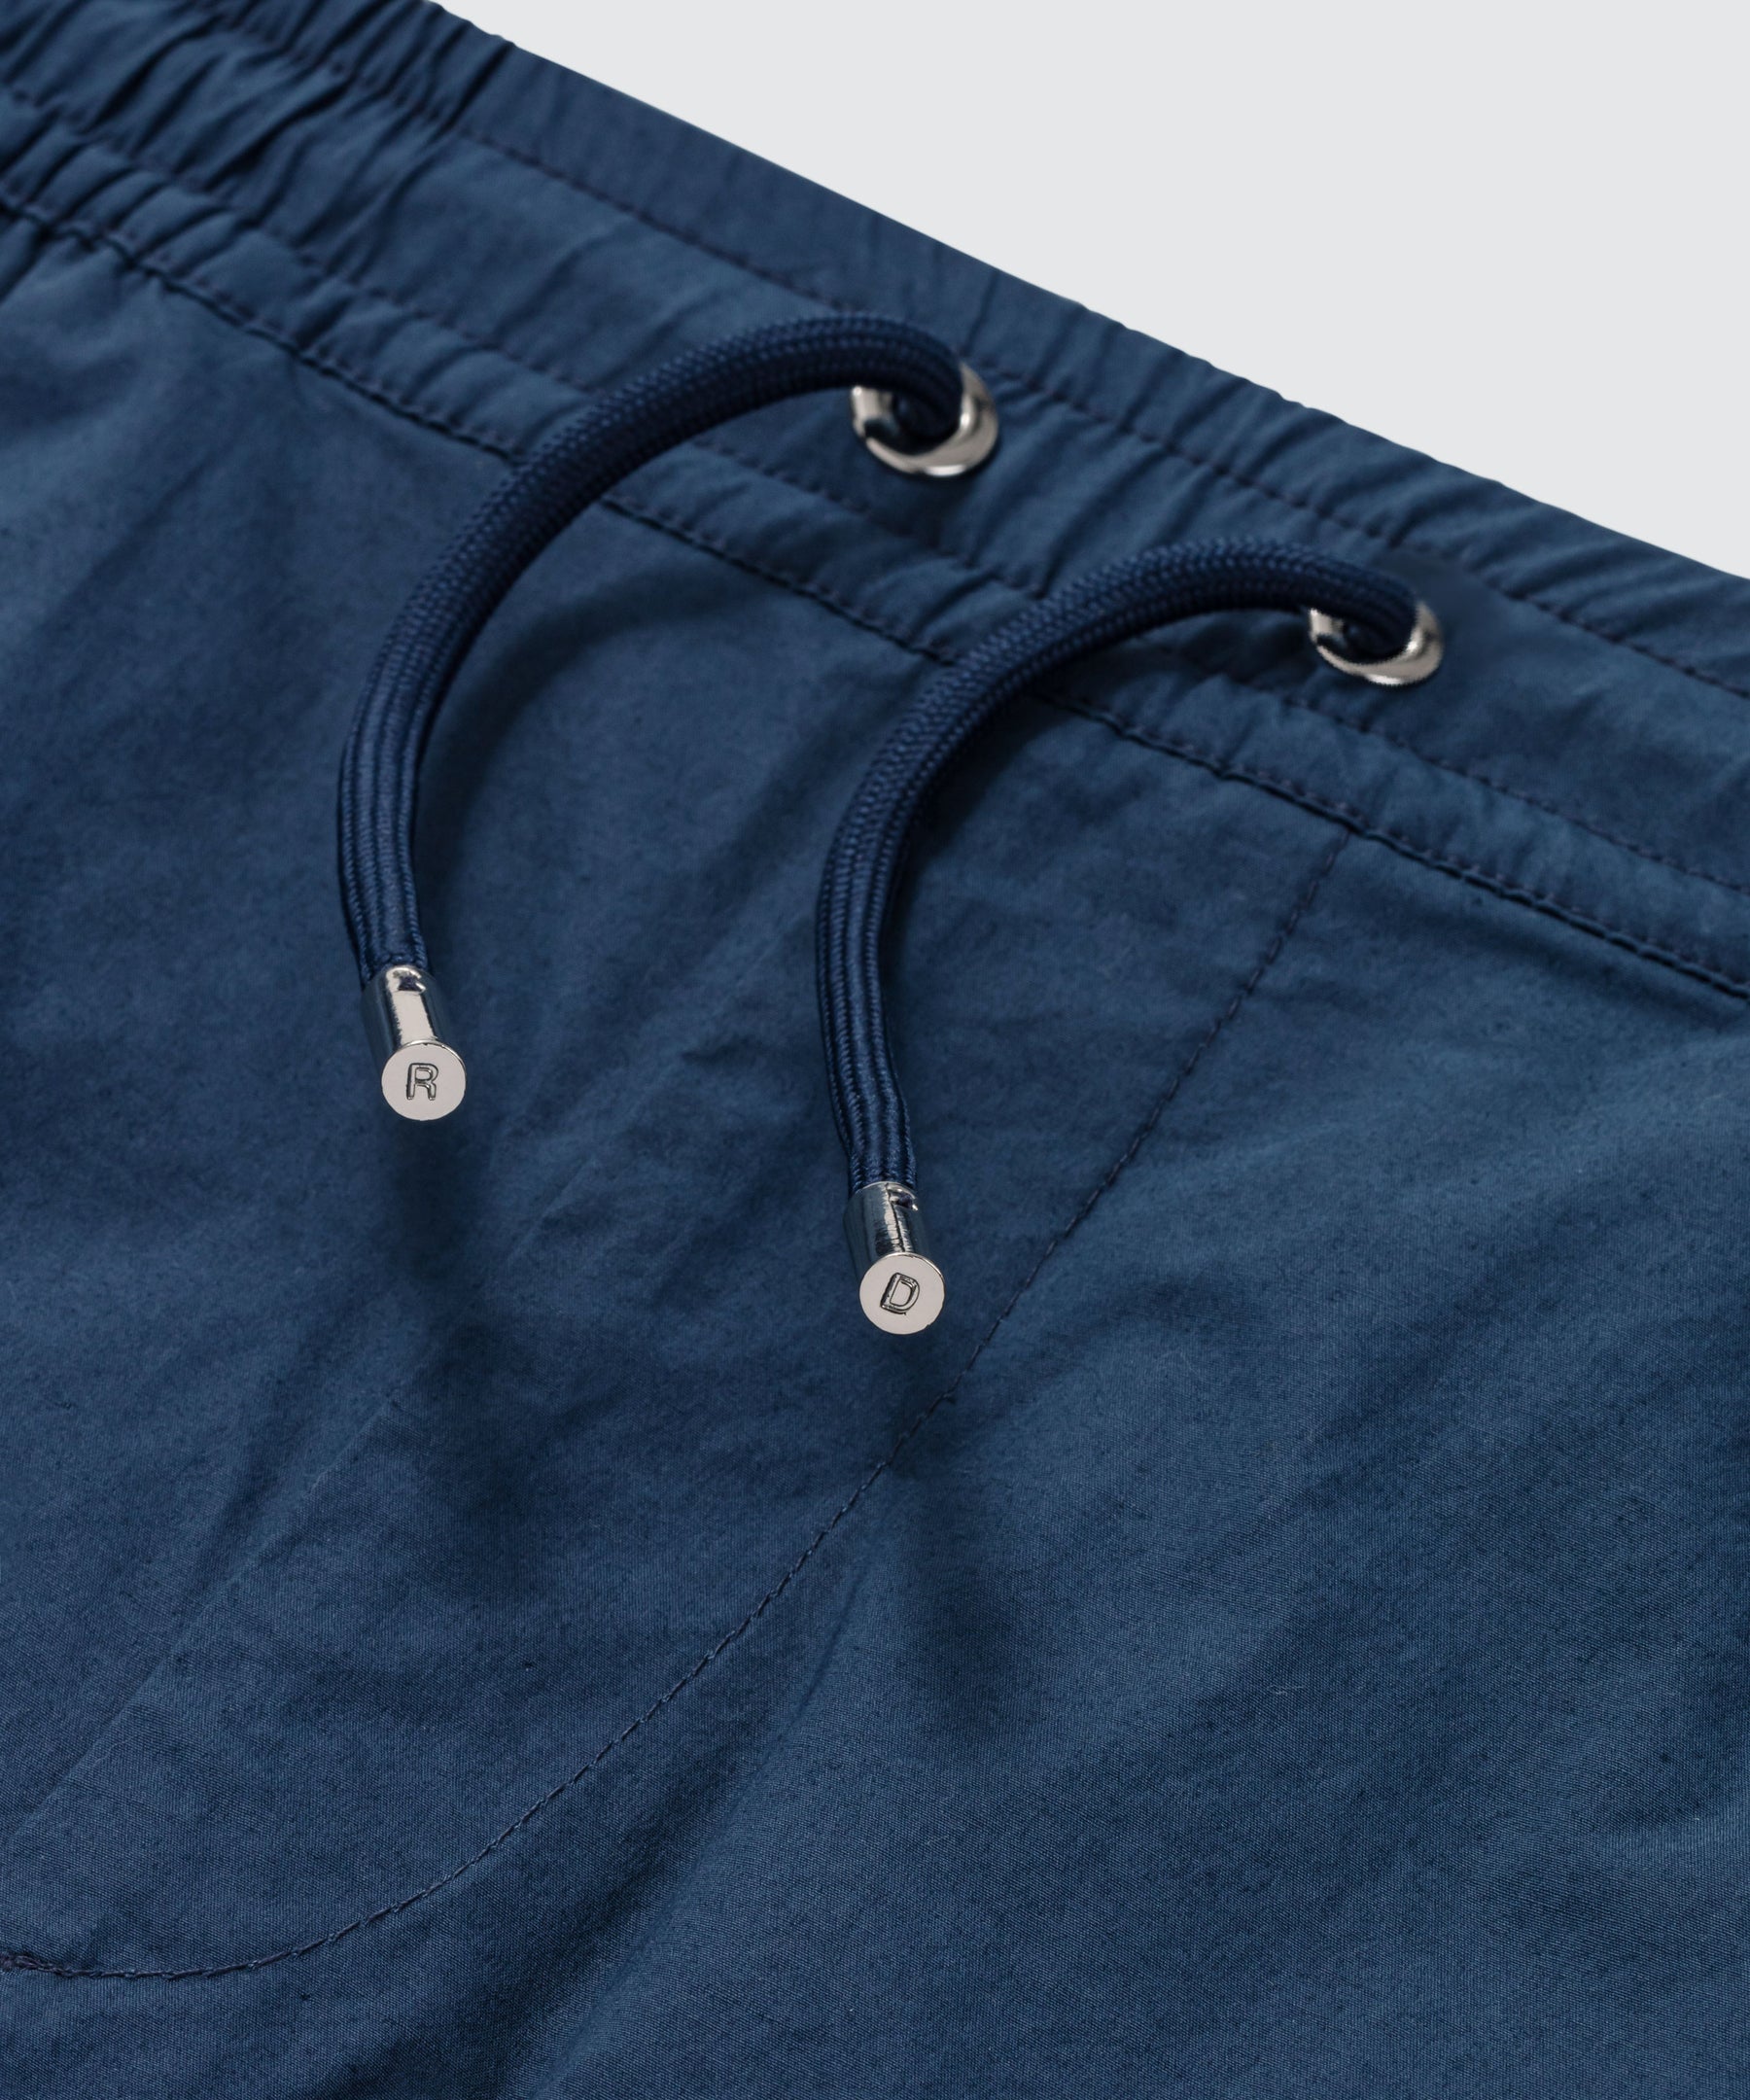 Short léger en coton élasthanne avec des bandes rayées: Bleu foncé